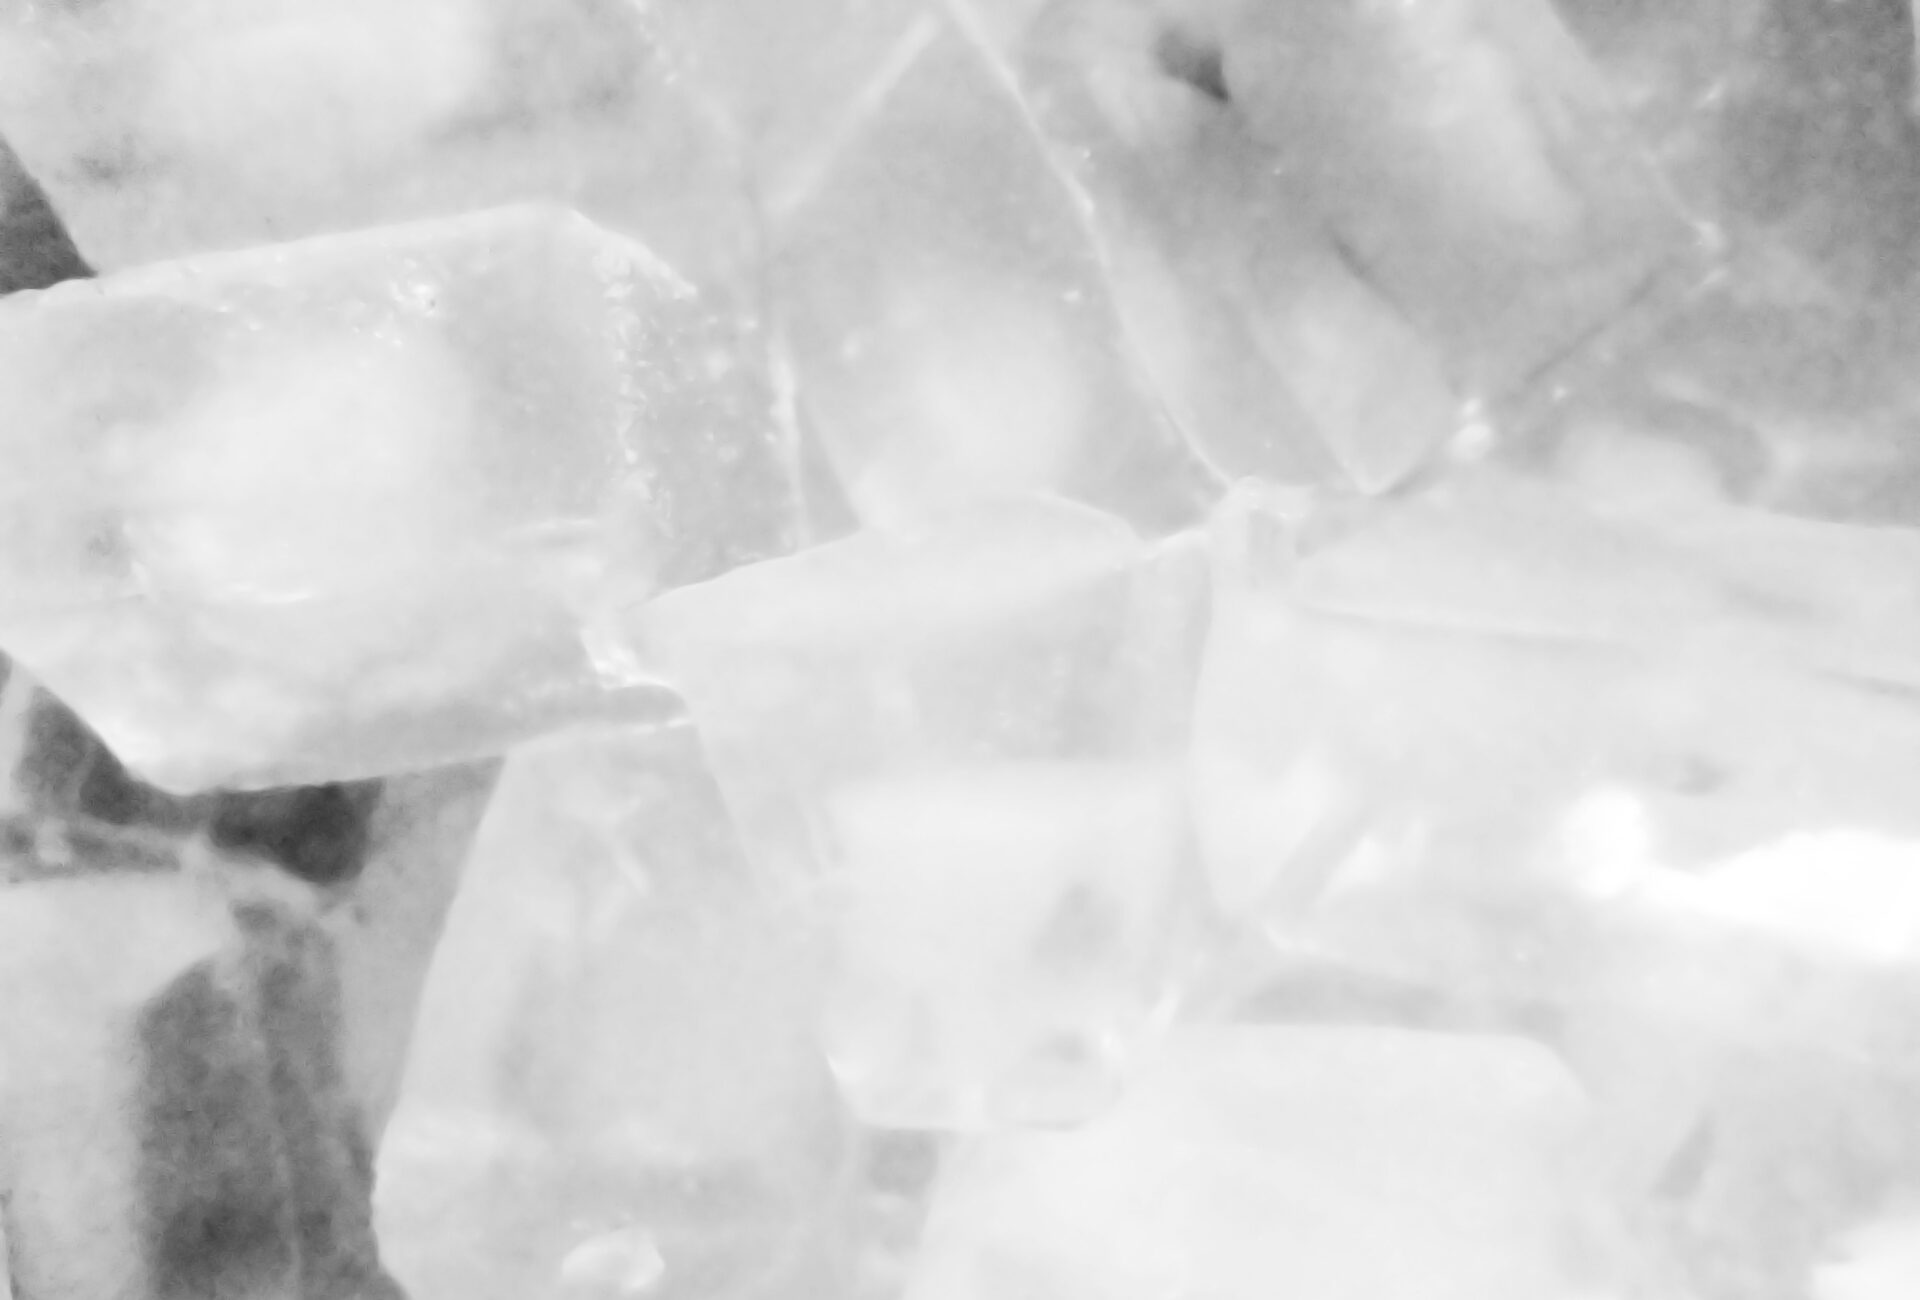 きれいな氷の作り方とは ミネラルウォーターでフラワーアイスキューブを作ろう 水と健康の情報メディア トリム ミズラボ 日本トリム